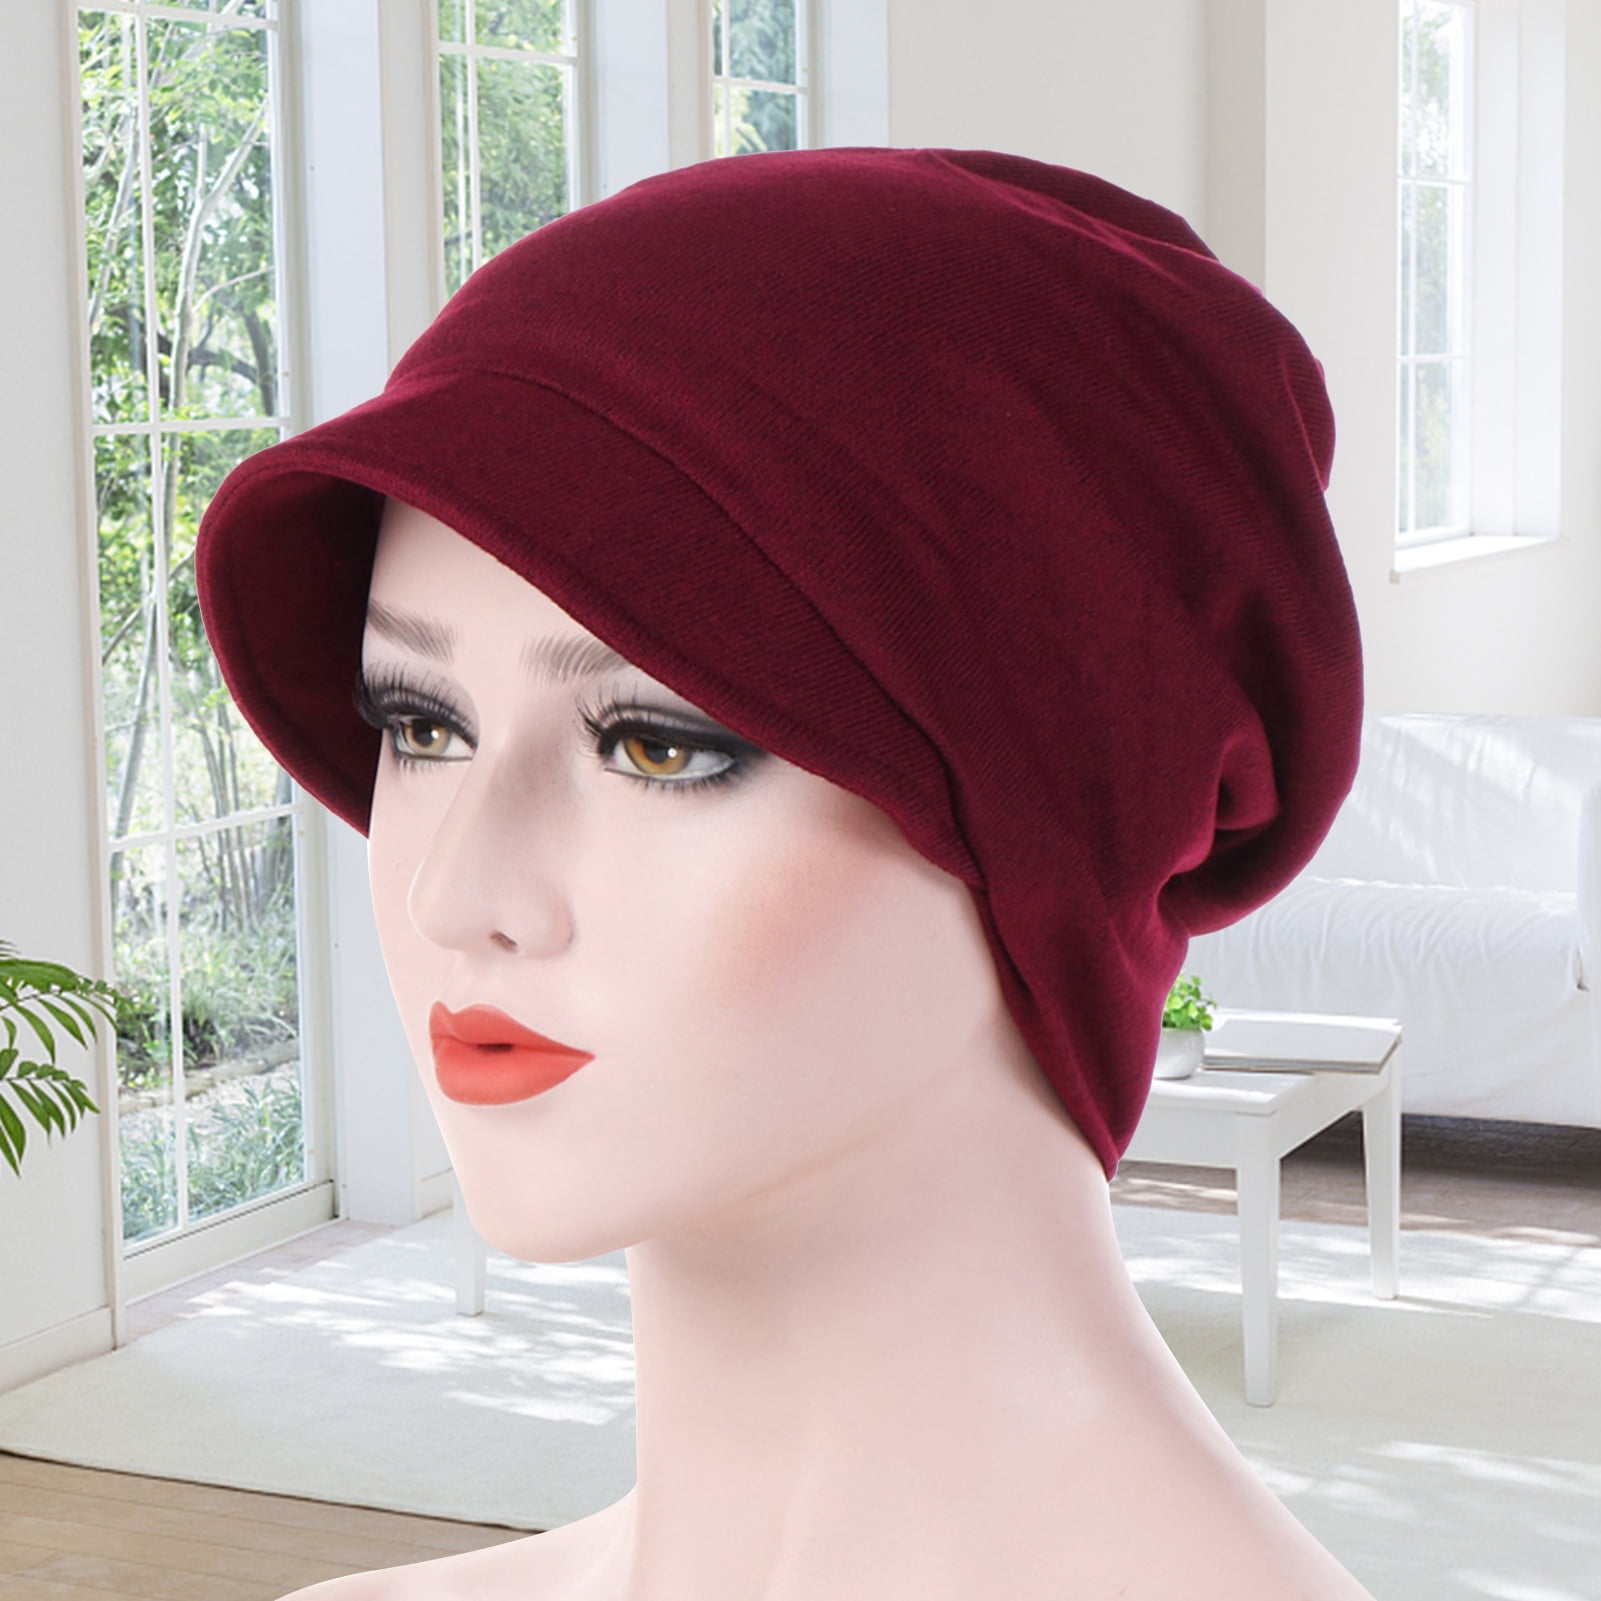 Biplut Fashion Warm Cotton Women Solid Color Beanie Cap for Autumn Winter 